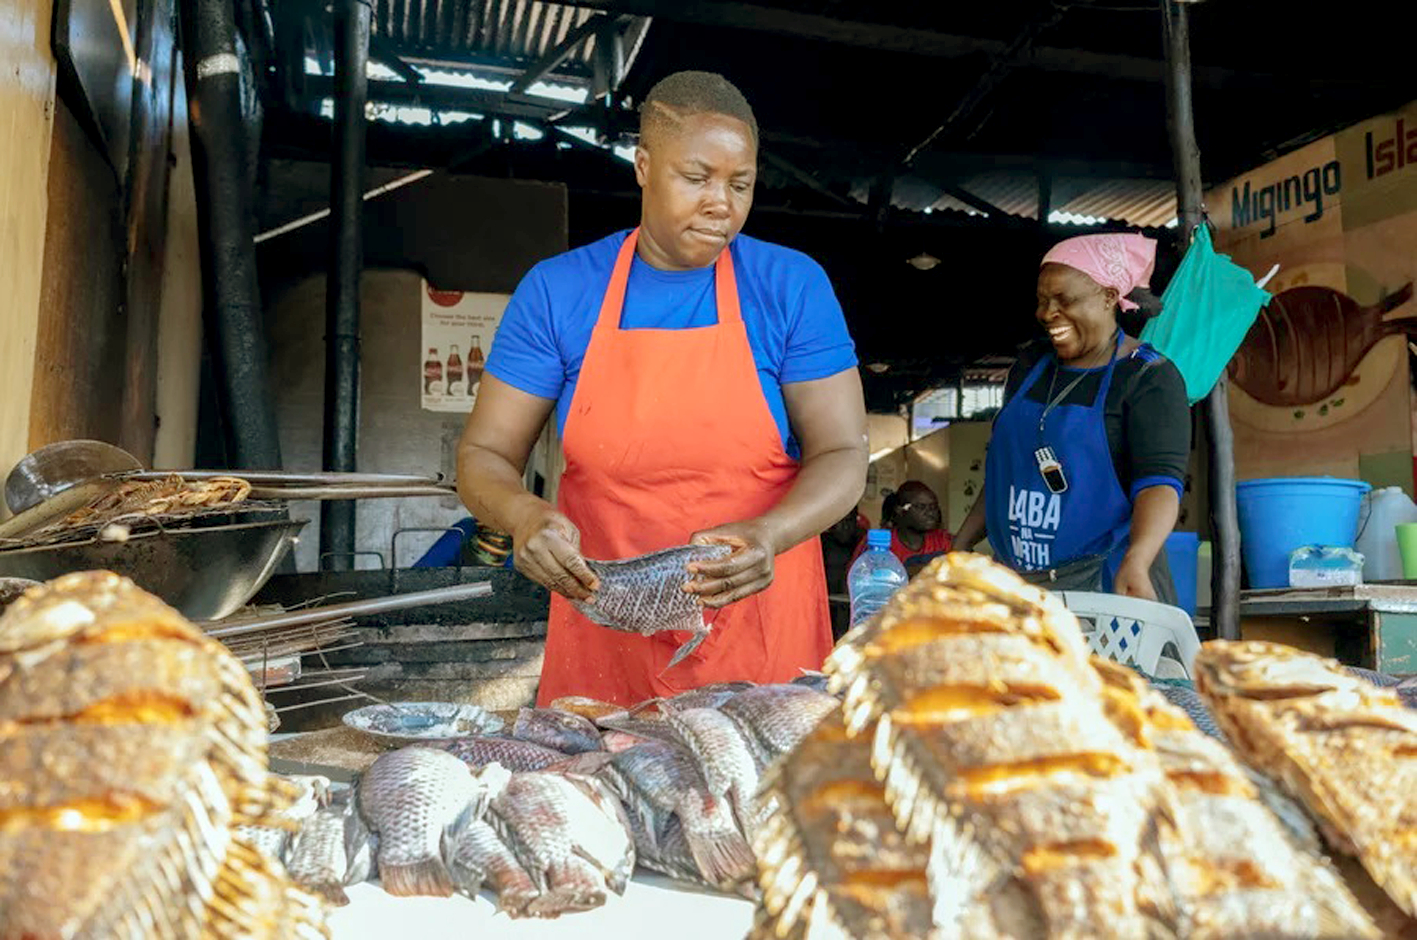 Florence Odero chuẩn bị cá rô để chiên giòn ở chợ Kenyatta của Nairobi - ẢNH: NPR